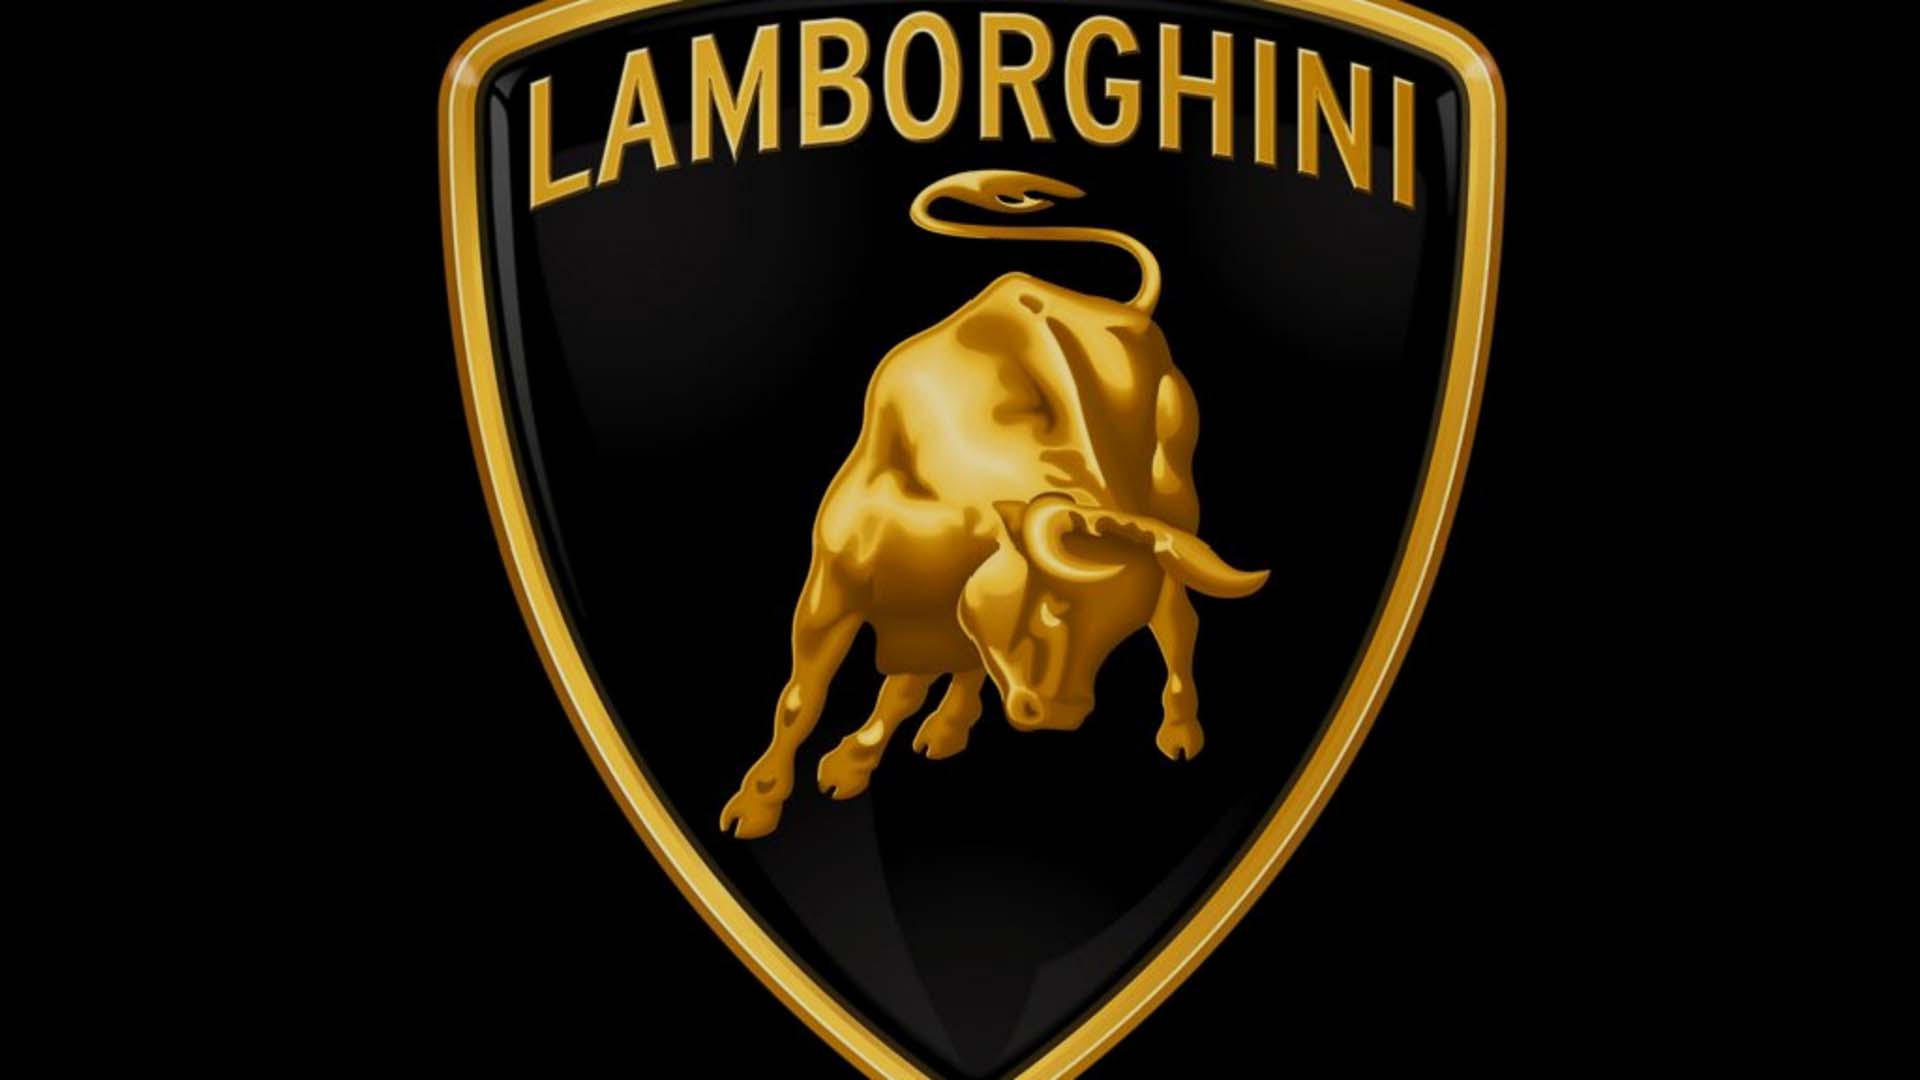 Lamborghini Logo Wallpaper For iPhone Image